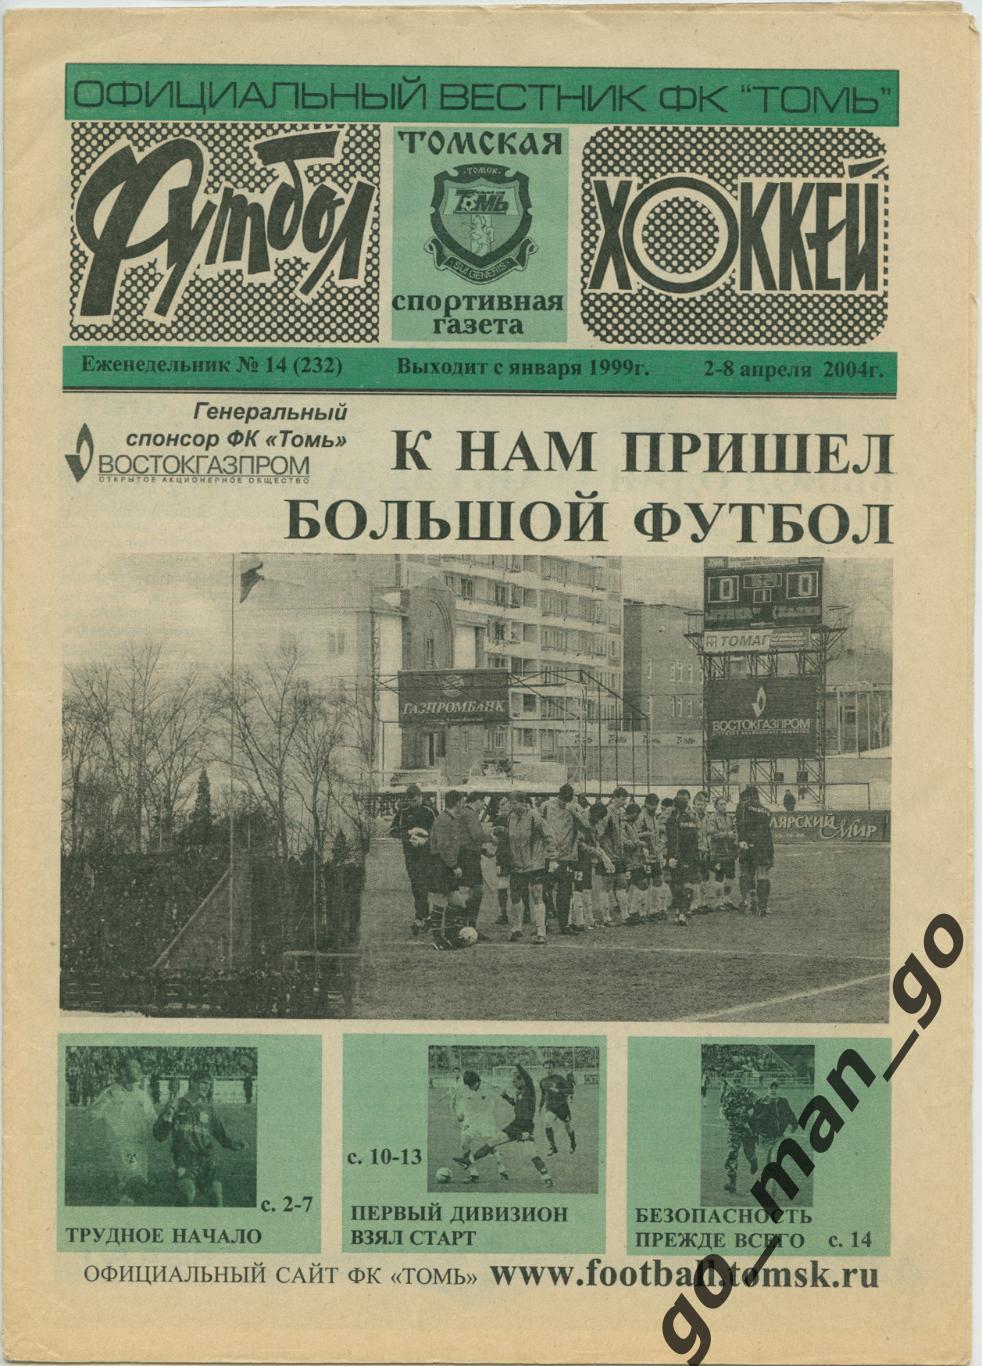 Еженедельник Футбол-Хоккей. Томская спортивная газета. 2004, № 14.